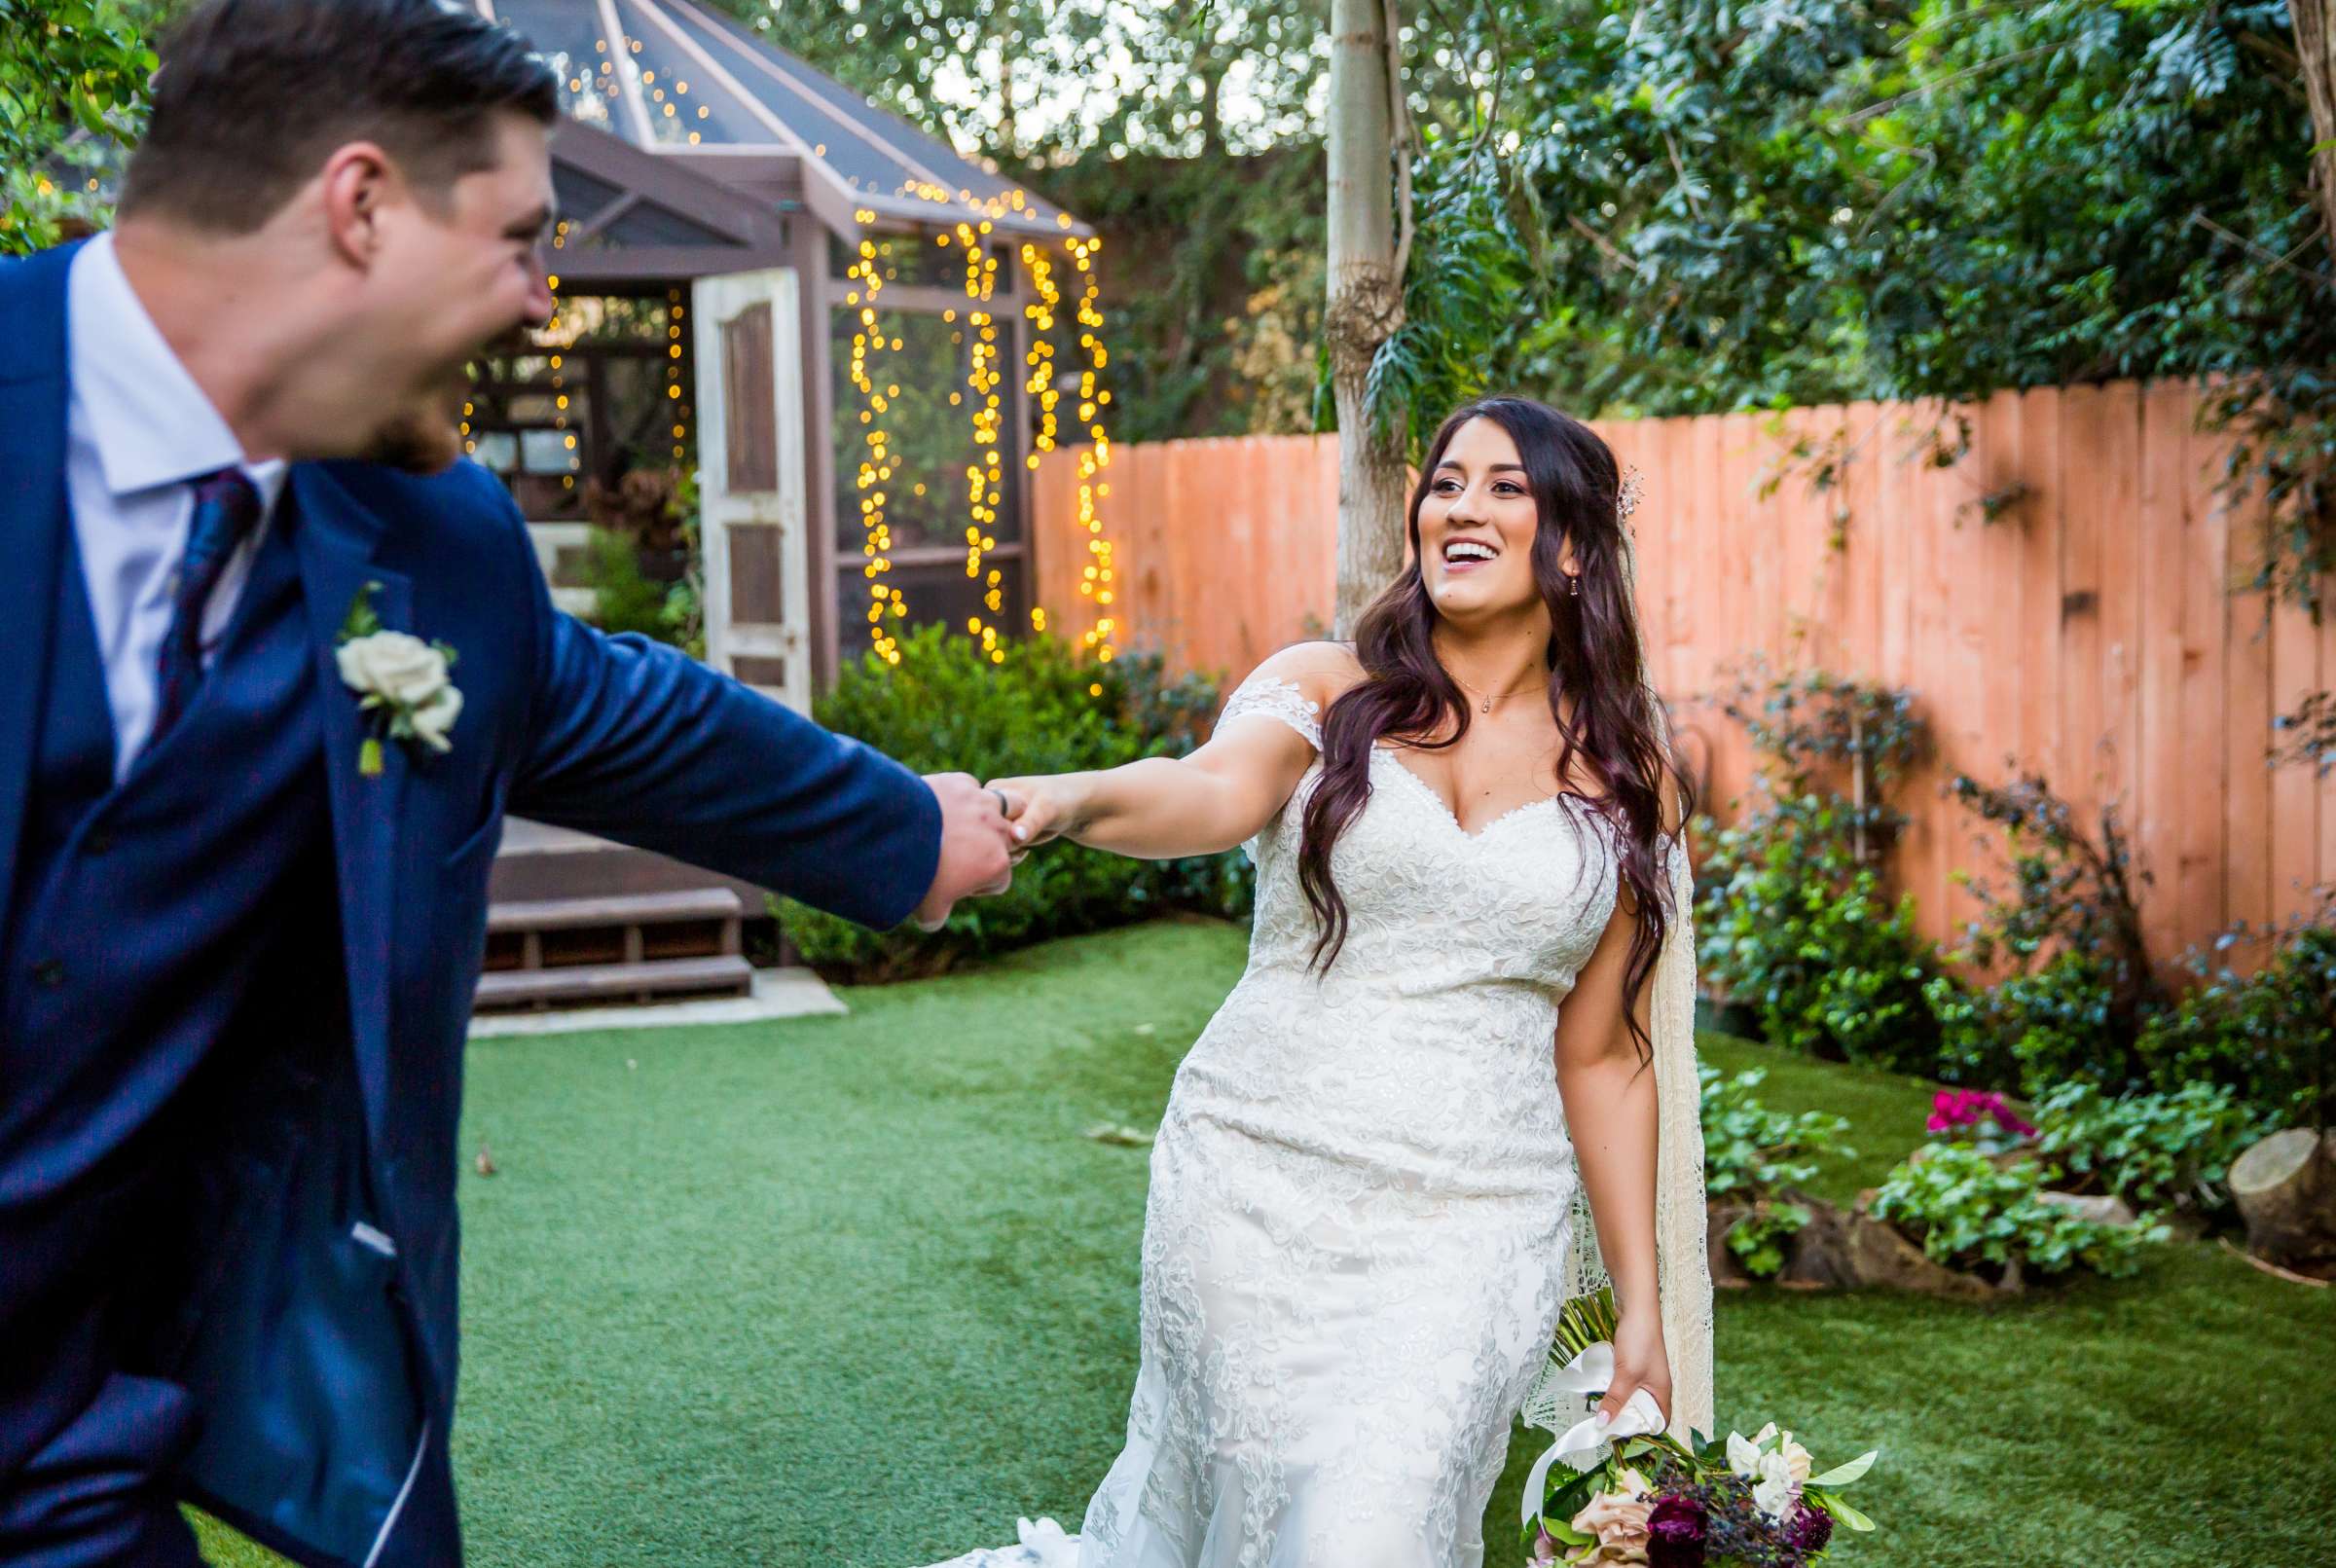 Twin Oaks House & Gardens Wedding Estate Wedding, Stephanie and Ilija Wedding Photo #19 by True Photography